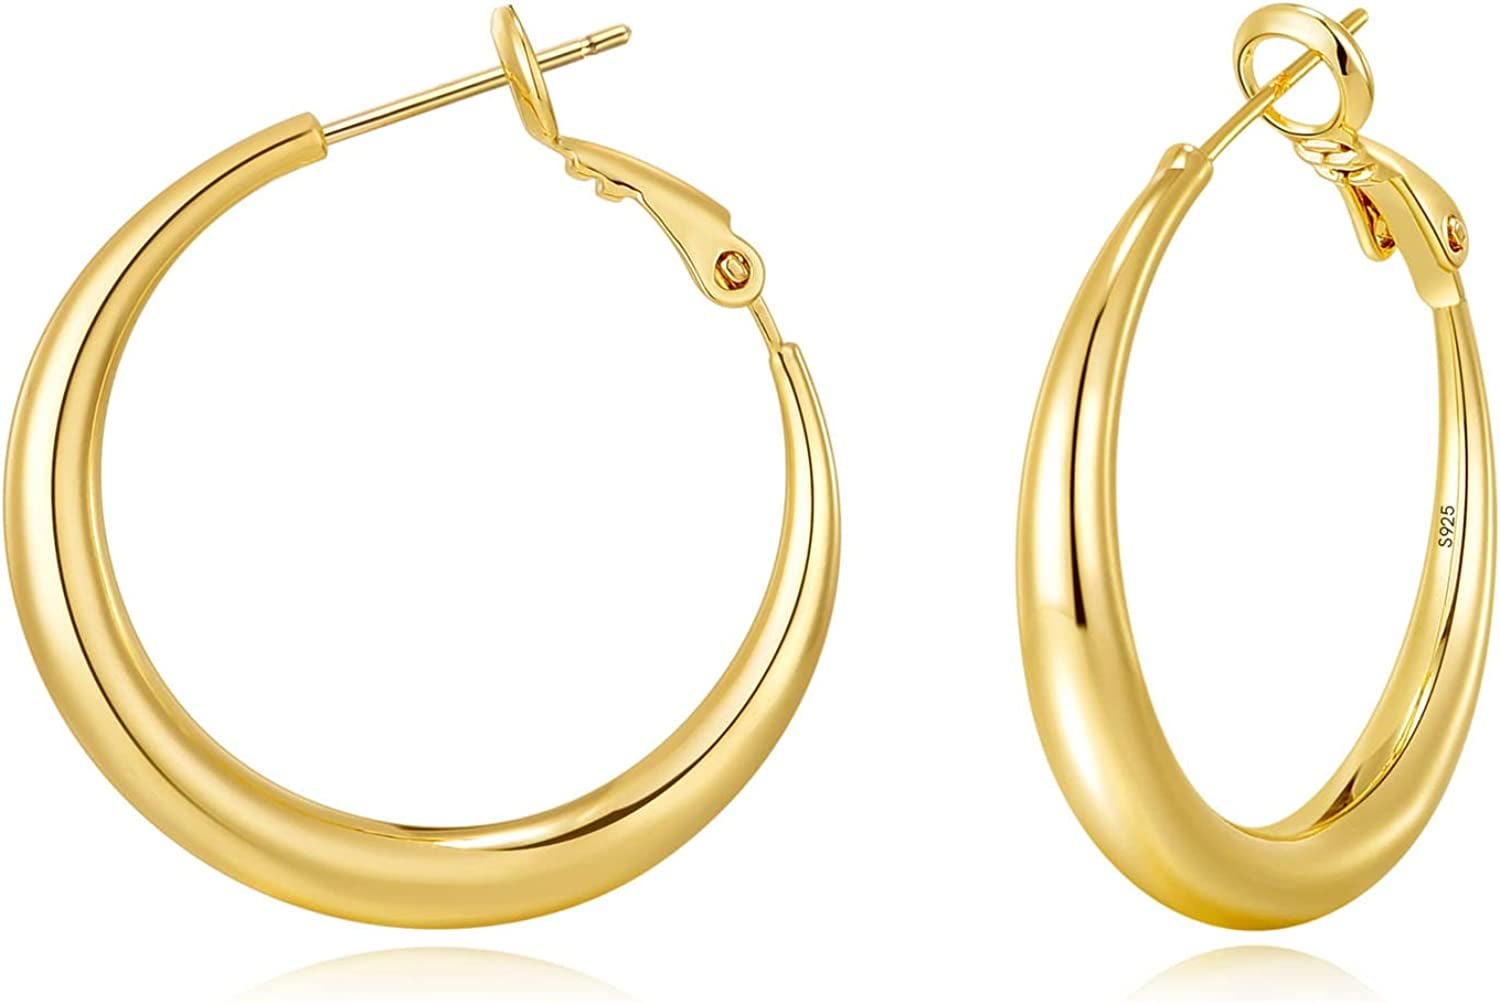 235-GER15019 - 22K Gold Hoop Earrings (Ear Bali) For Women | Gold earrings  models, Gold hoop earrings, Gold temple jewellery